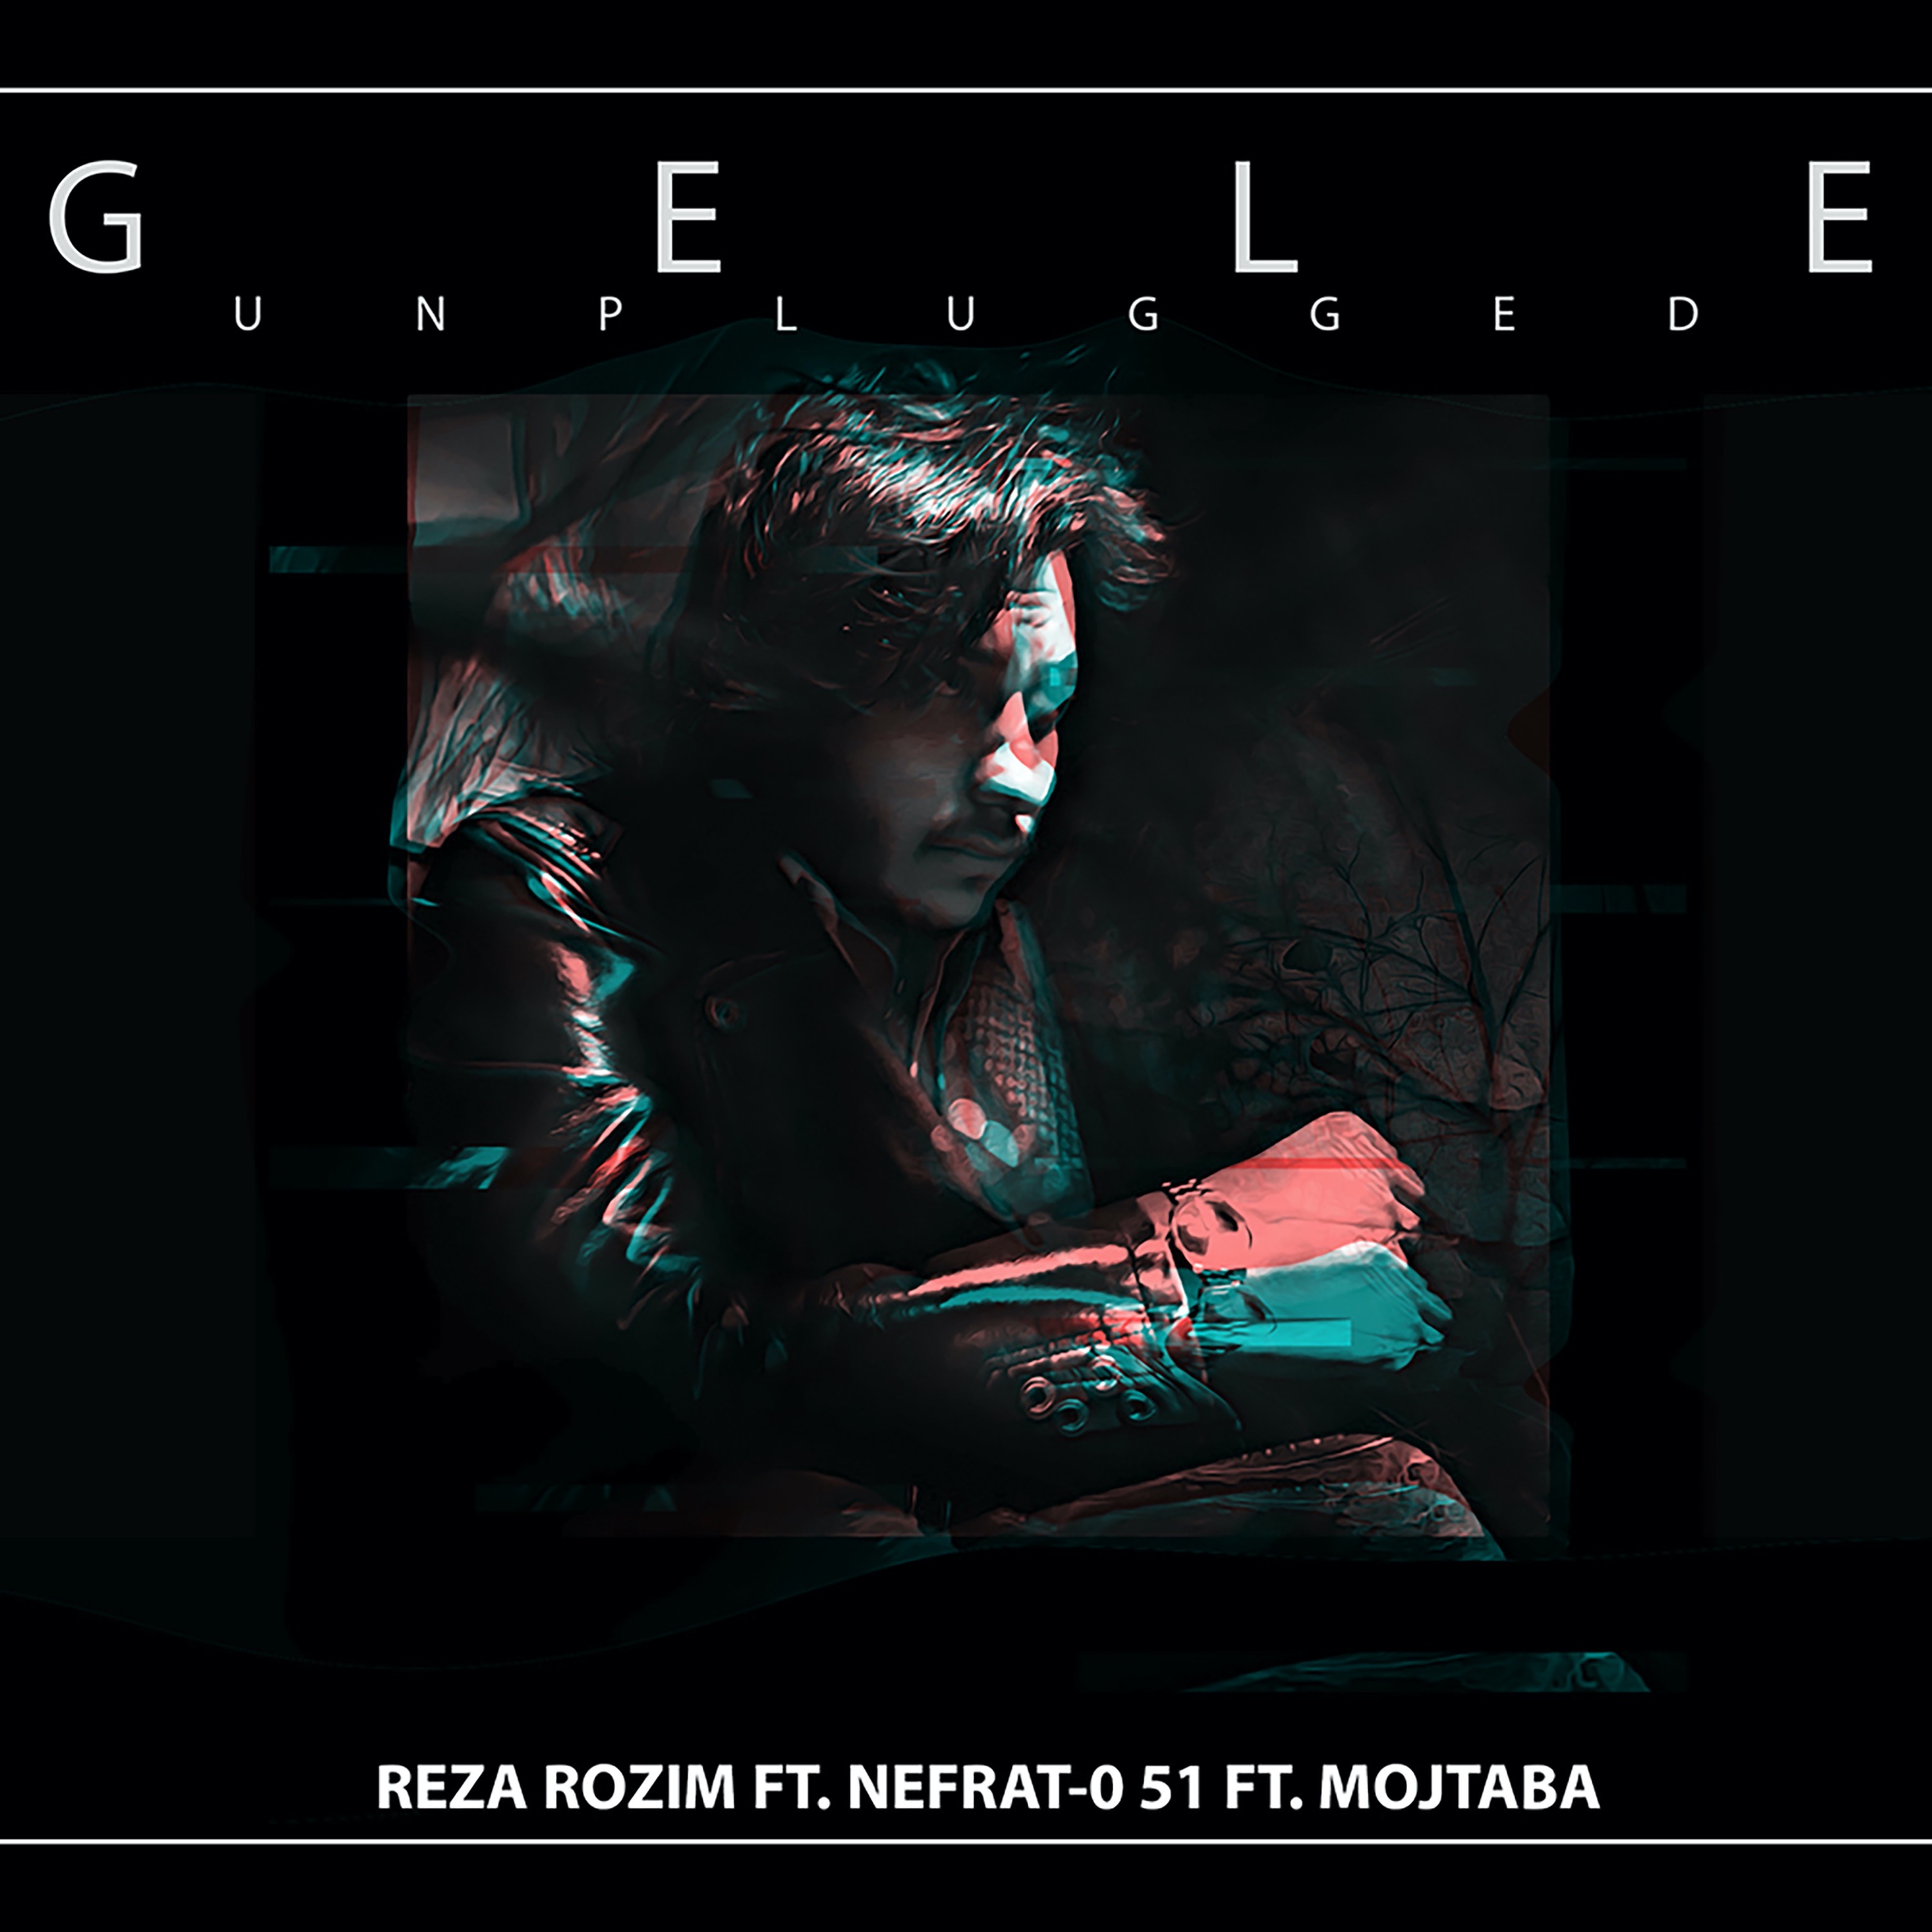  دانلود آهنگ جدید رُظیم - گله (آنپلاگد) | Download New Music By Reza Rozim - Gele (Feat. Nefrat 051 & Mojtaba) | Unplugged Version